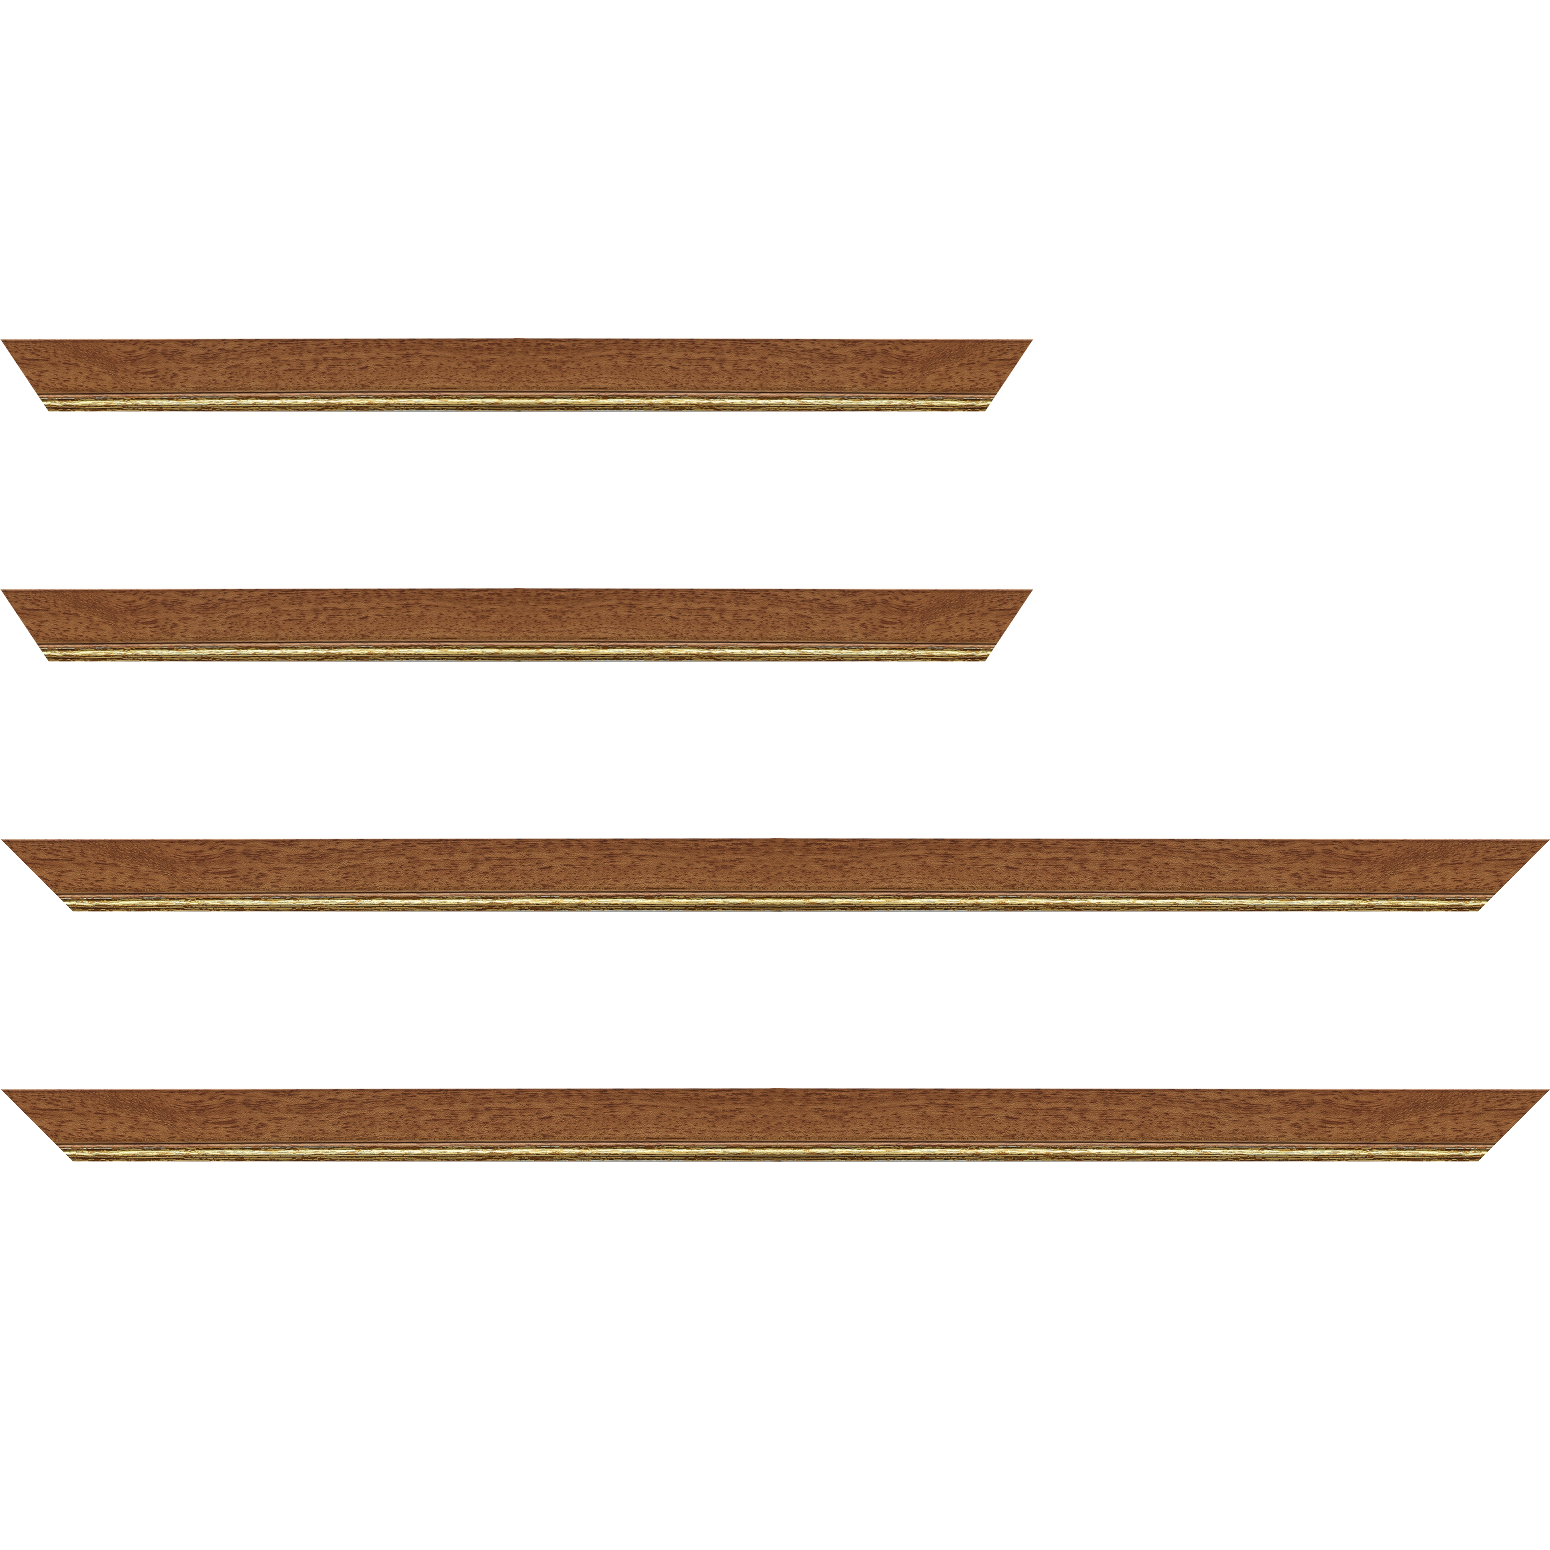 Baguette bois profil plat largeur 2.5cm couleur marron ton bois filet or - 34x40